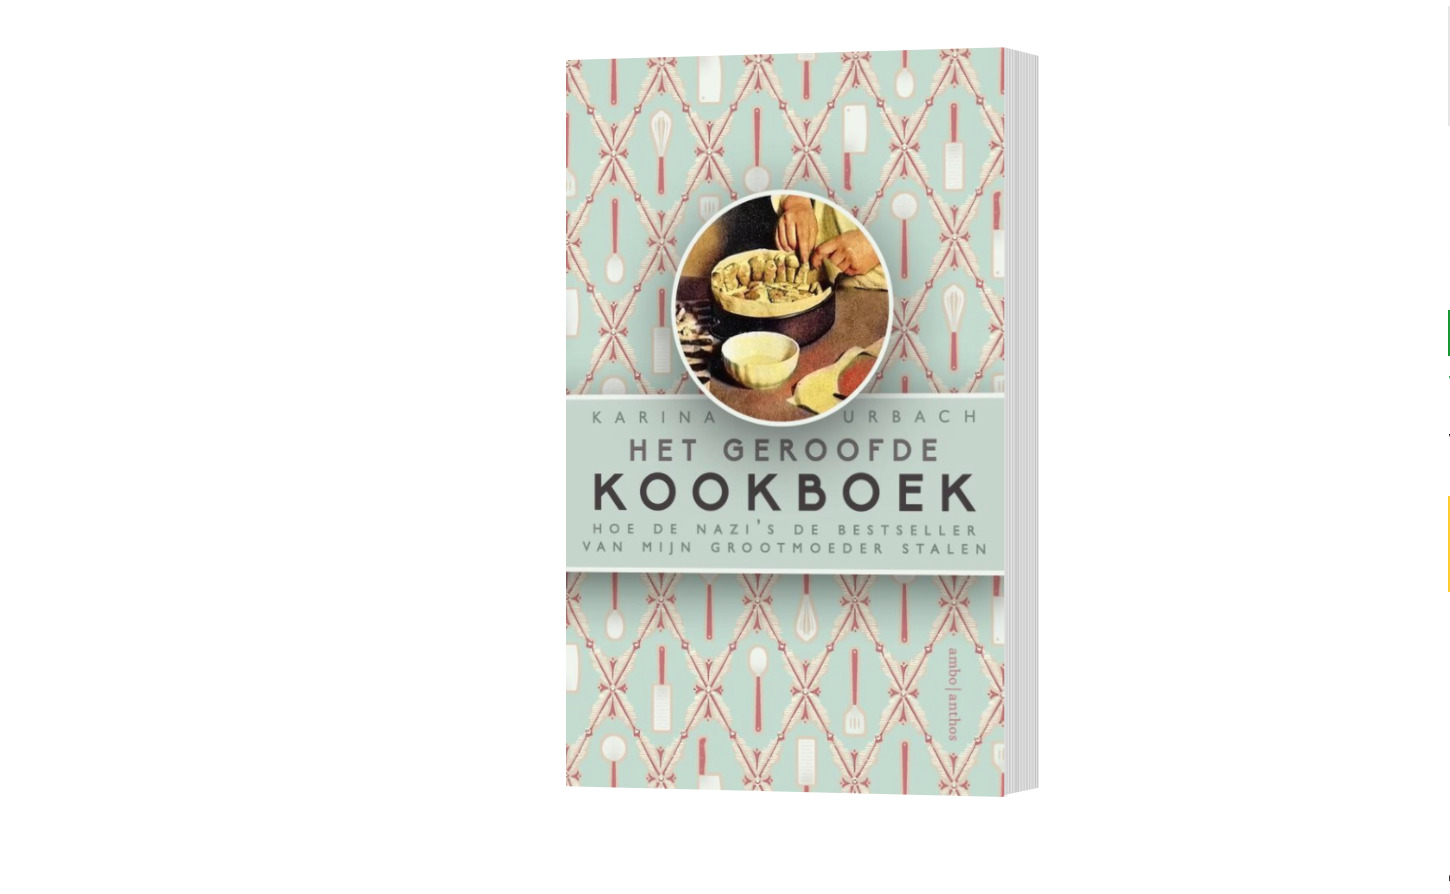 Het geroofde kookboek: aangrijpend, maar taai en soms stroperig’ – recensie